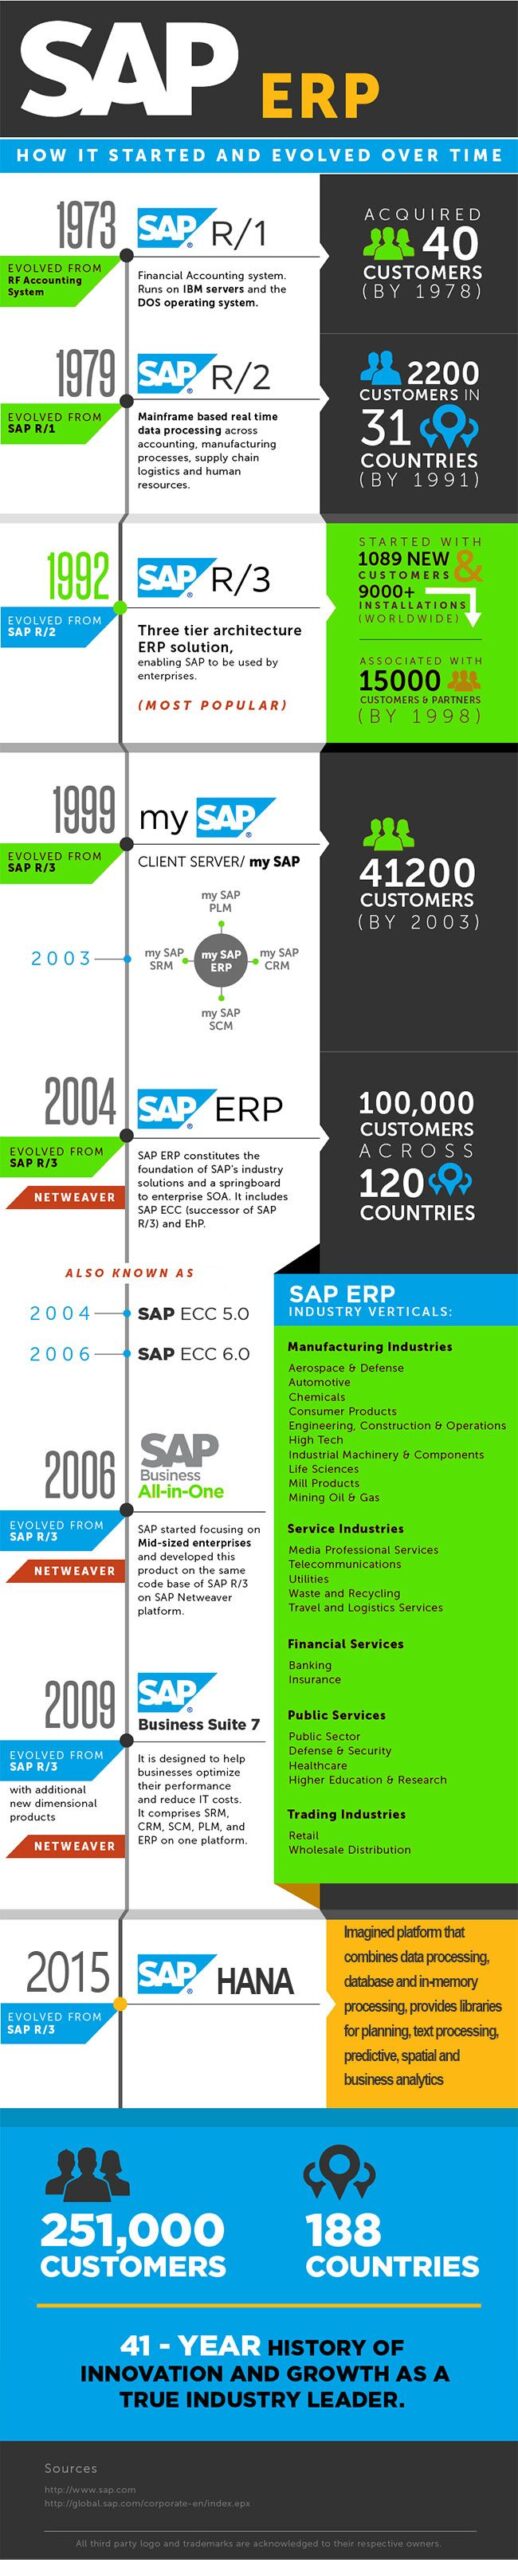 SAP ERP进化历史